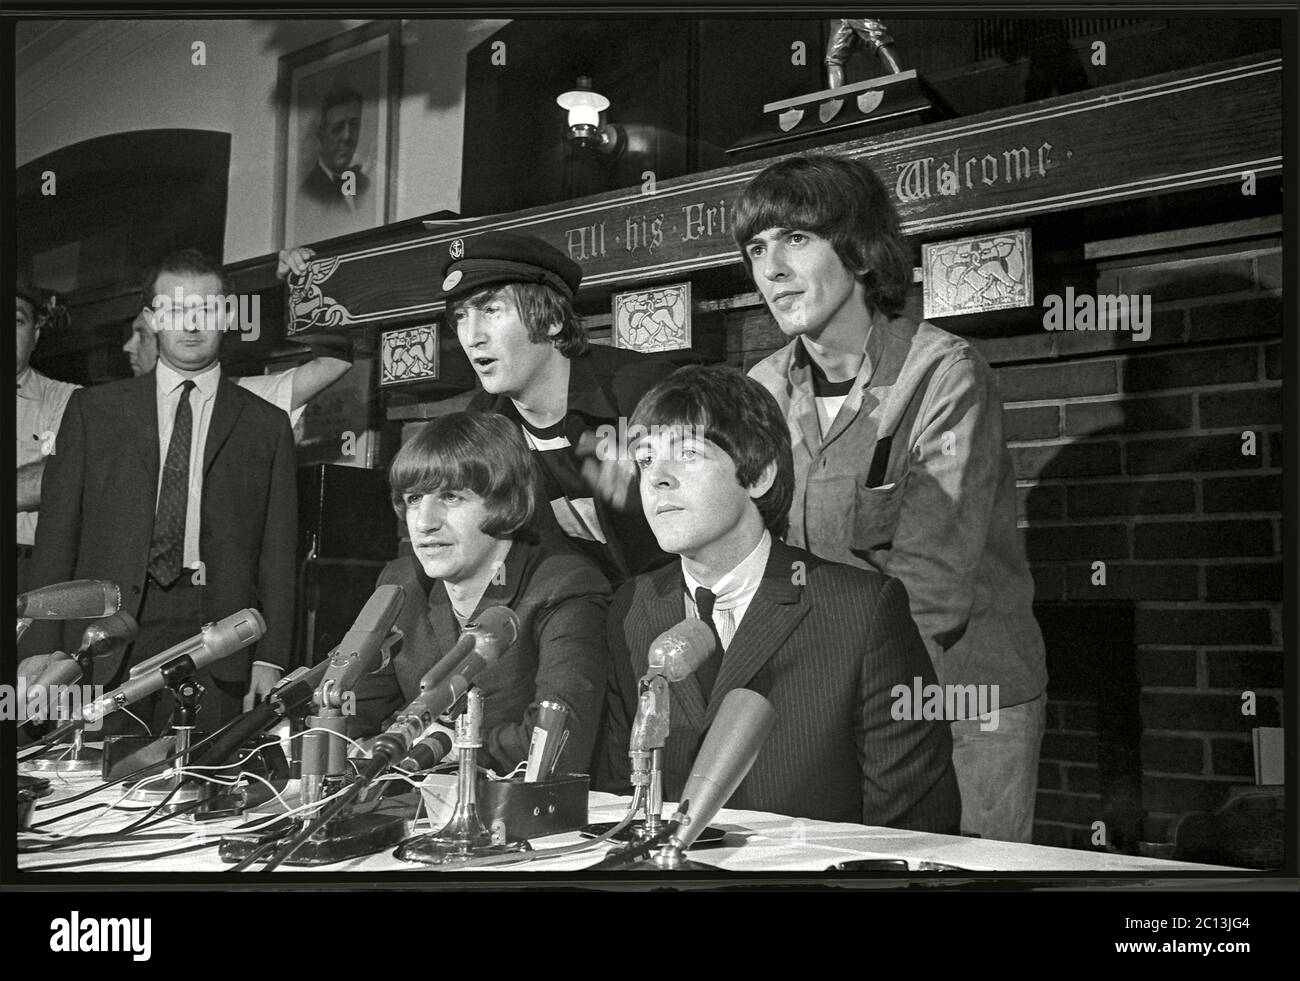 I Beatles hanno una conferenza stampa prima della loro esibizione al Comiskey Park, Chicago, Illinois. 20 agosto 1965. Immagine da negativo 35 mm. Foto Stock